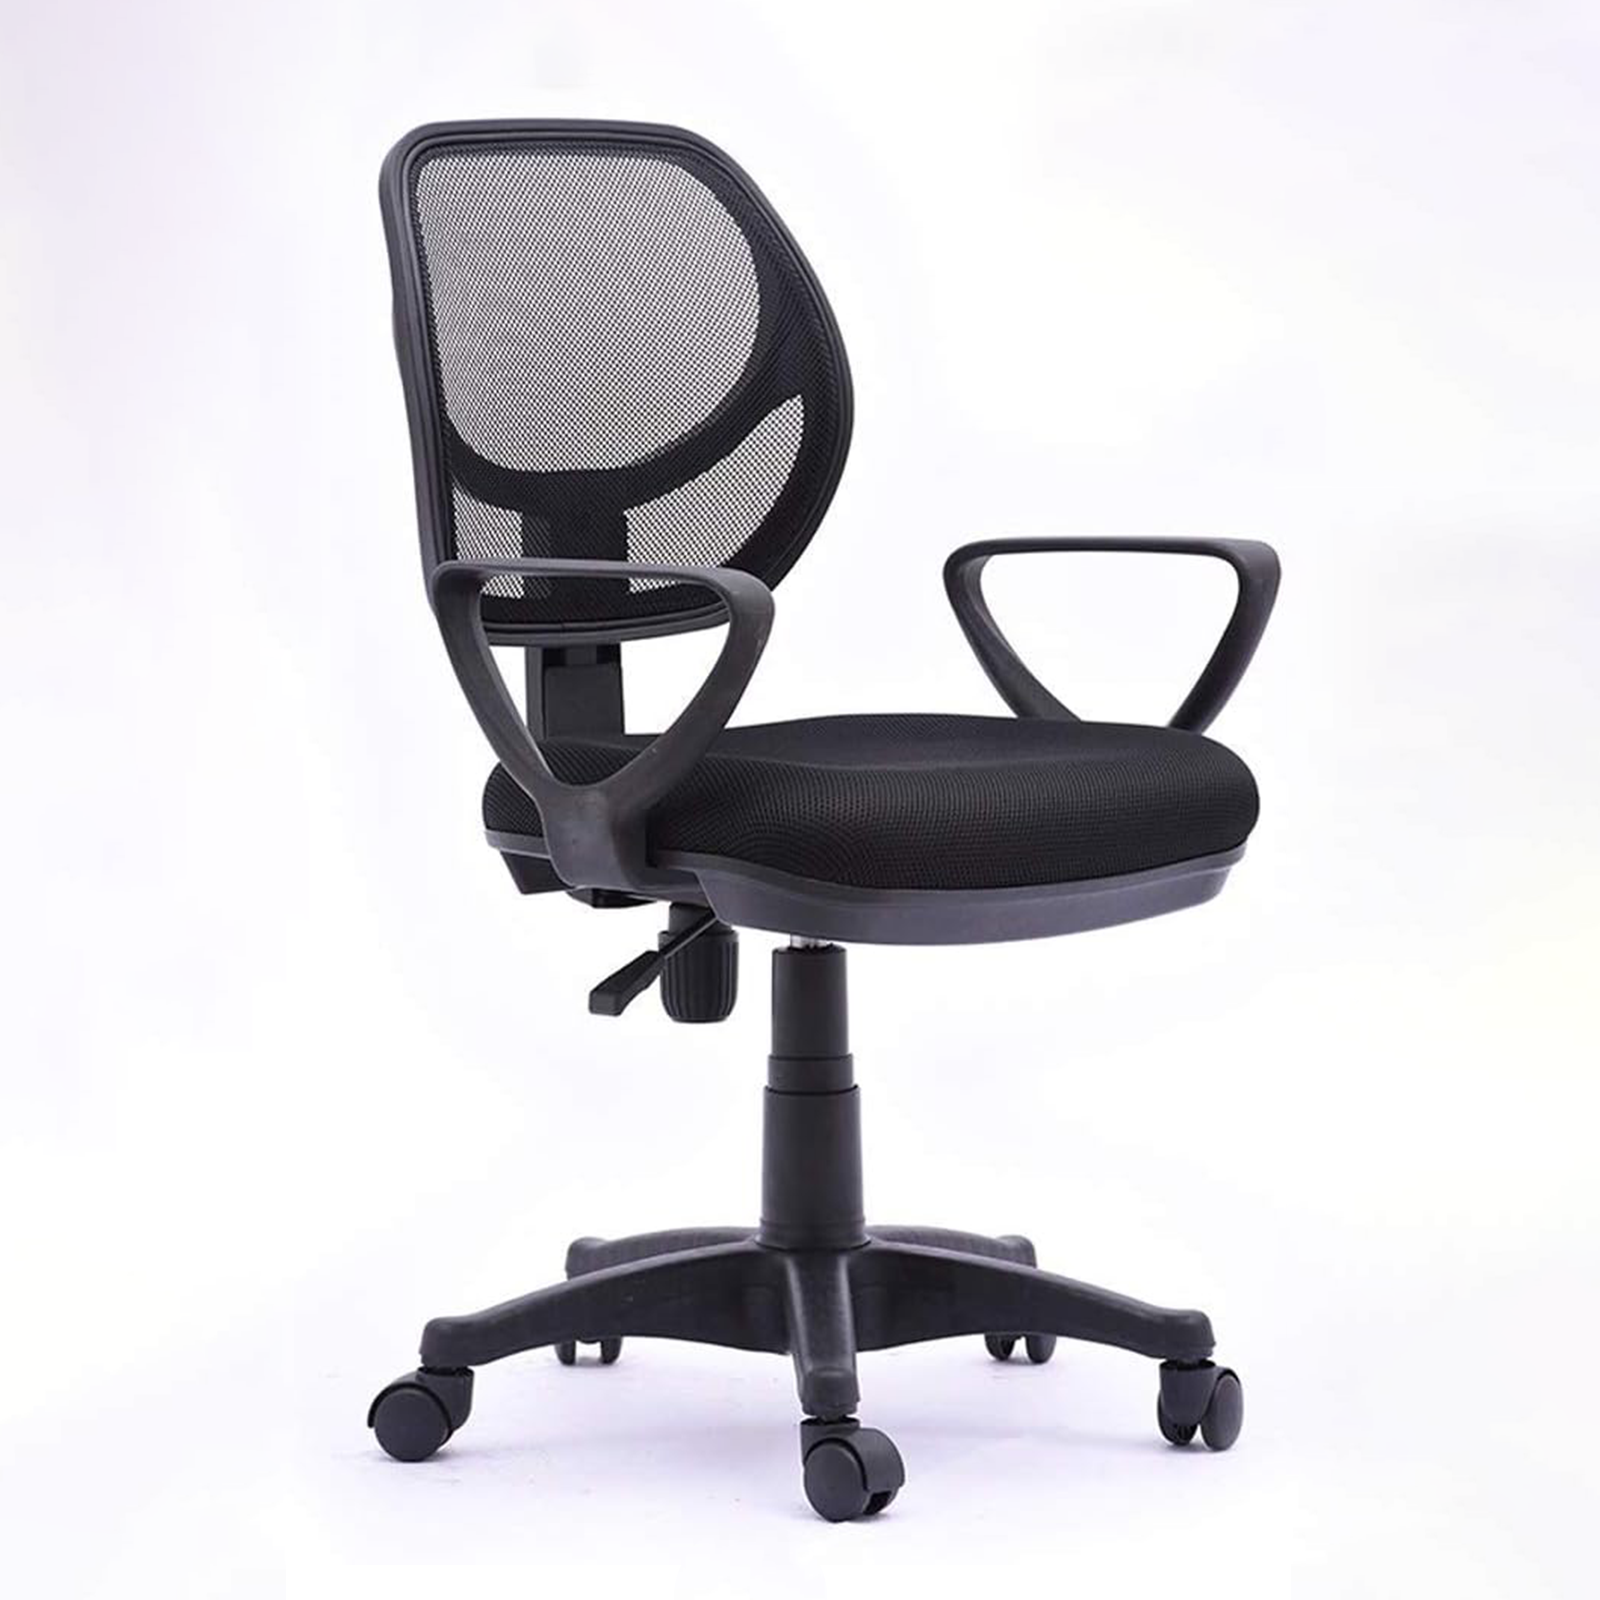 Silla de oficina giratoria New Manager sillón ejecutivo con ruedas y soporte gaming